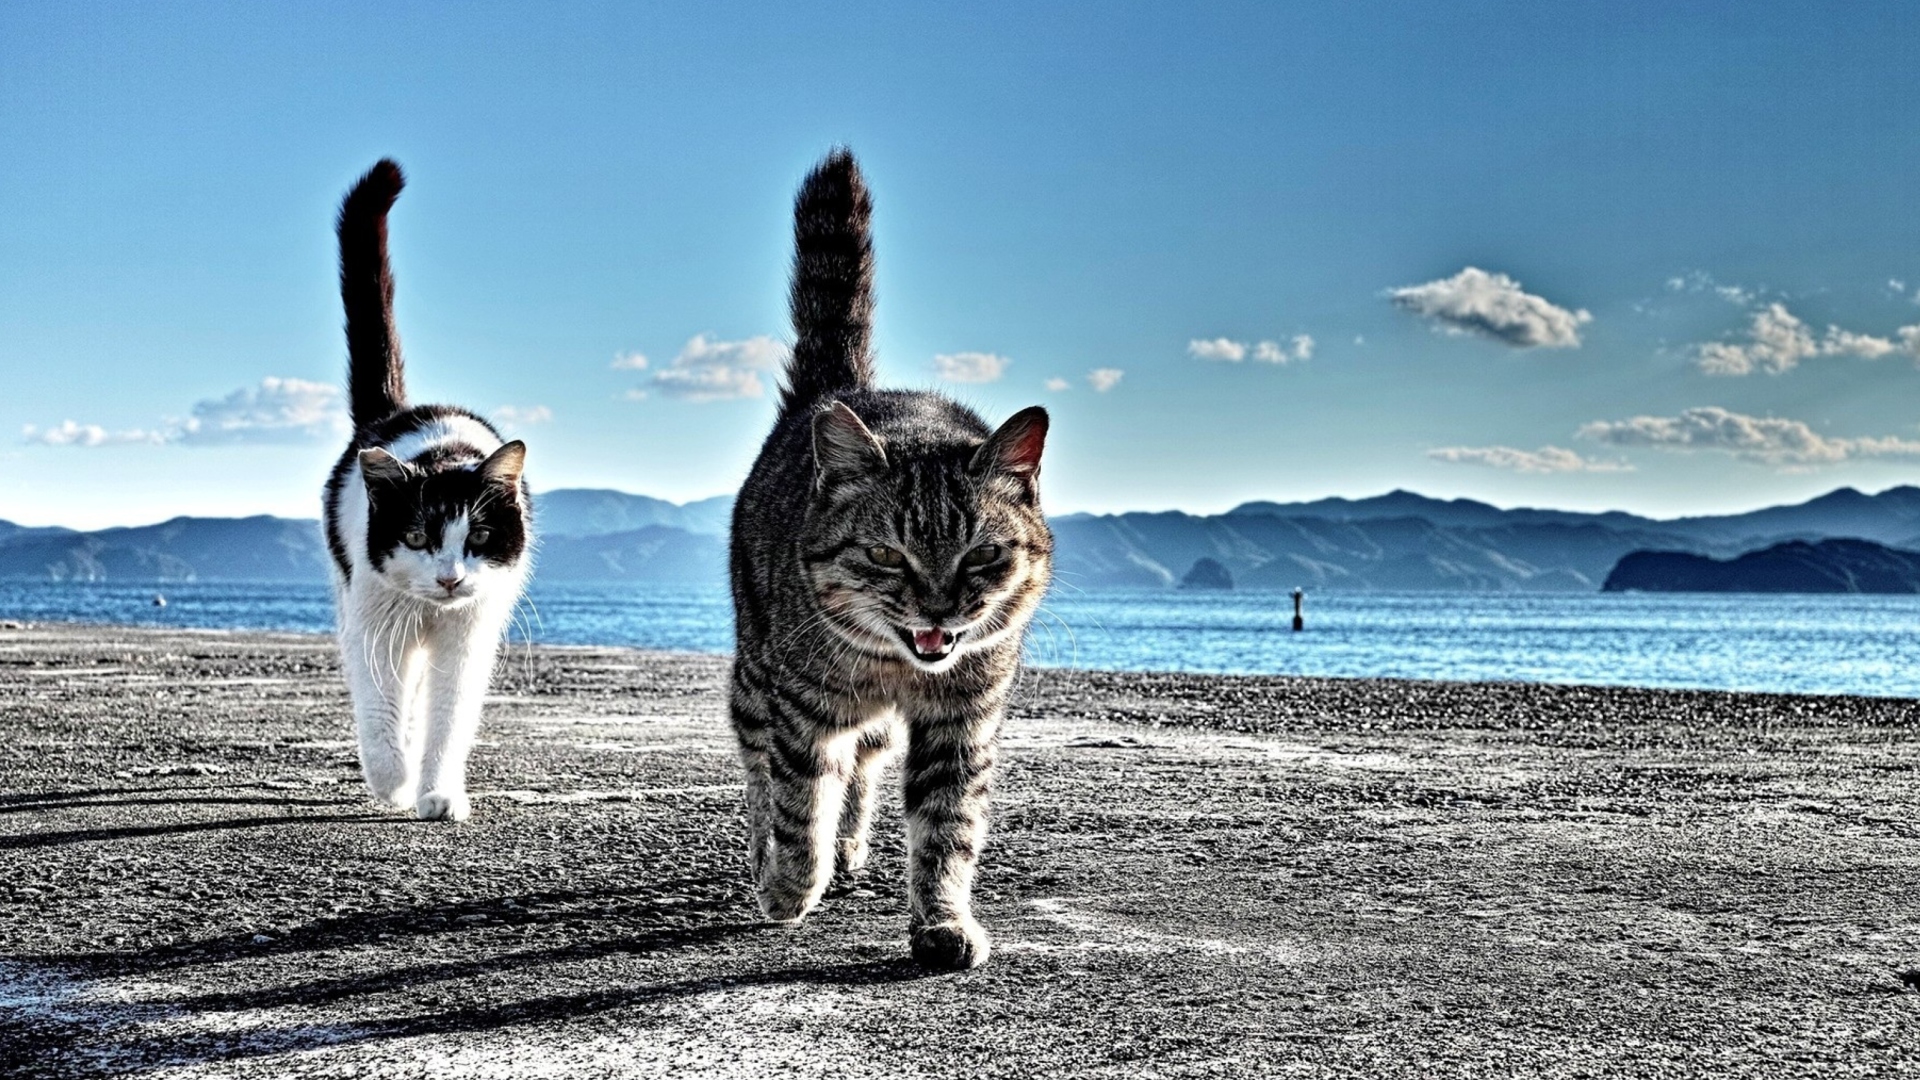 Sfondi Cats Walking At Beach 1920x1080